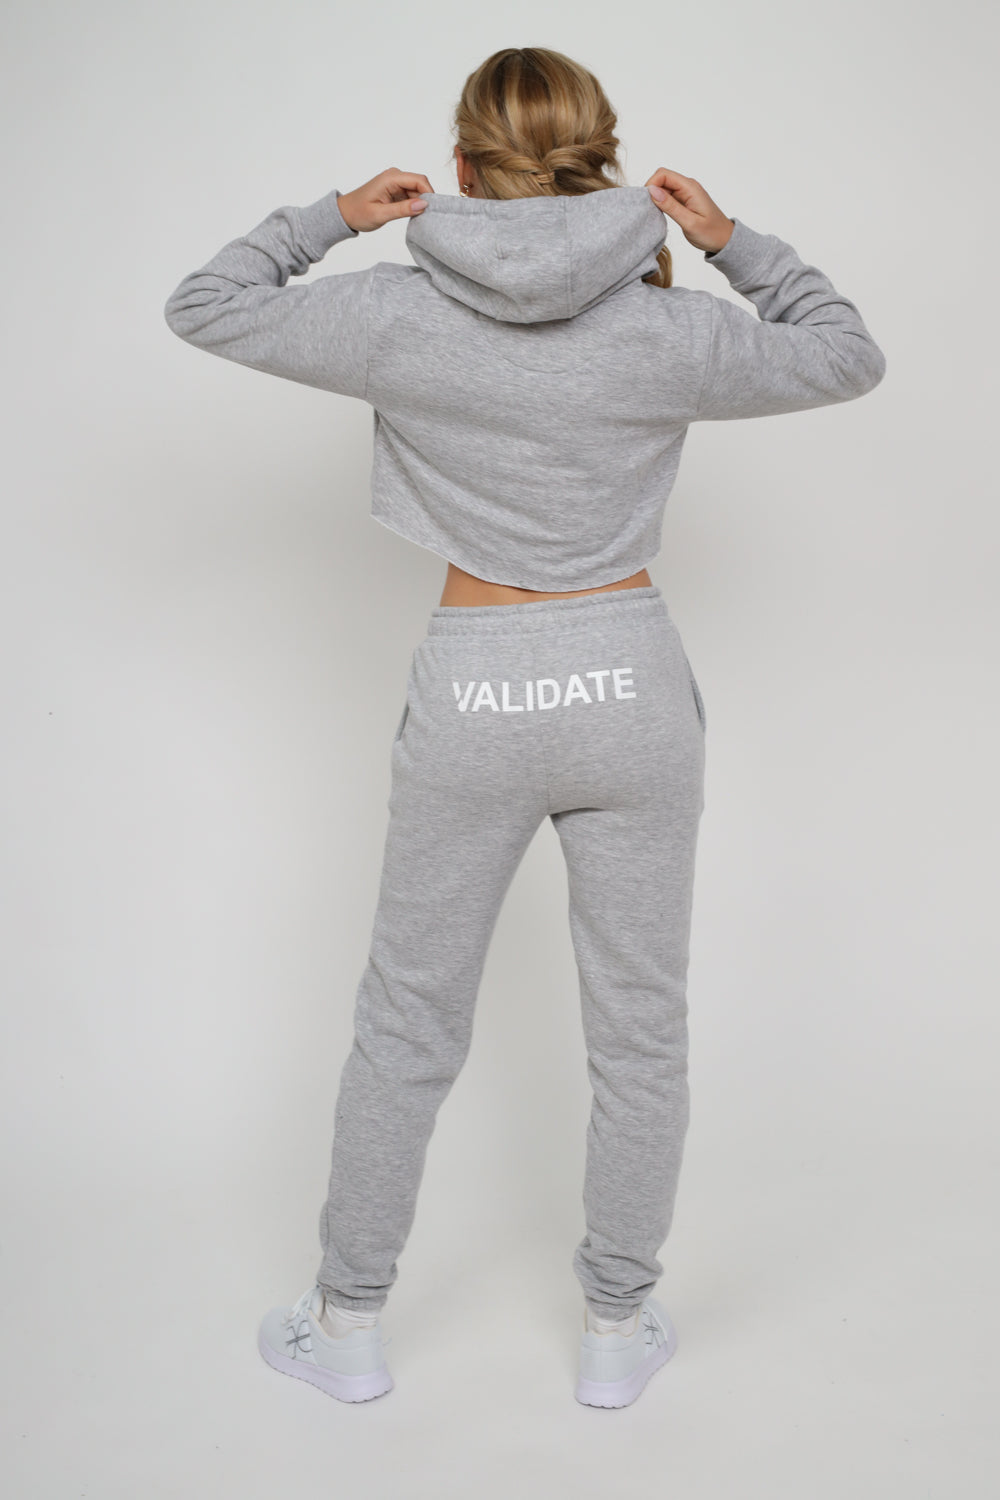 Validate Grey Arden Hoodie | Validate Fashion Hoodies & Sweatshirts | Hertfordshire